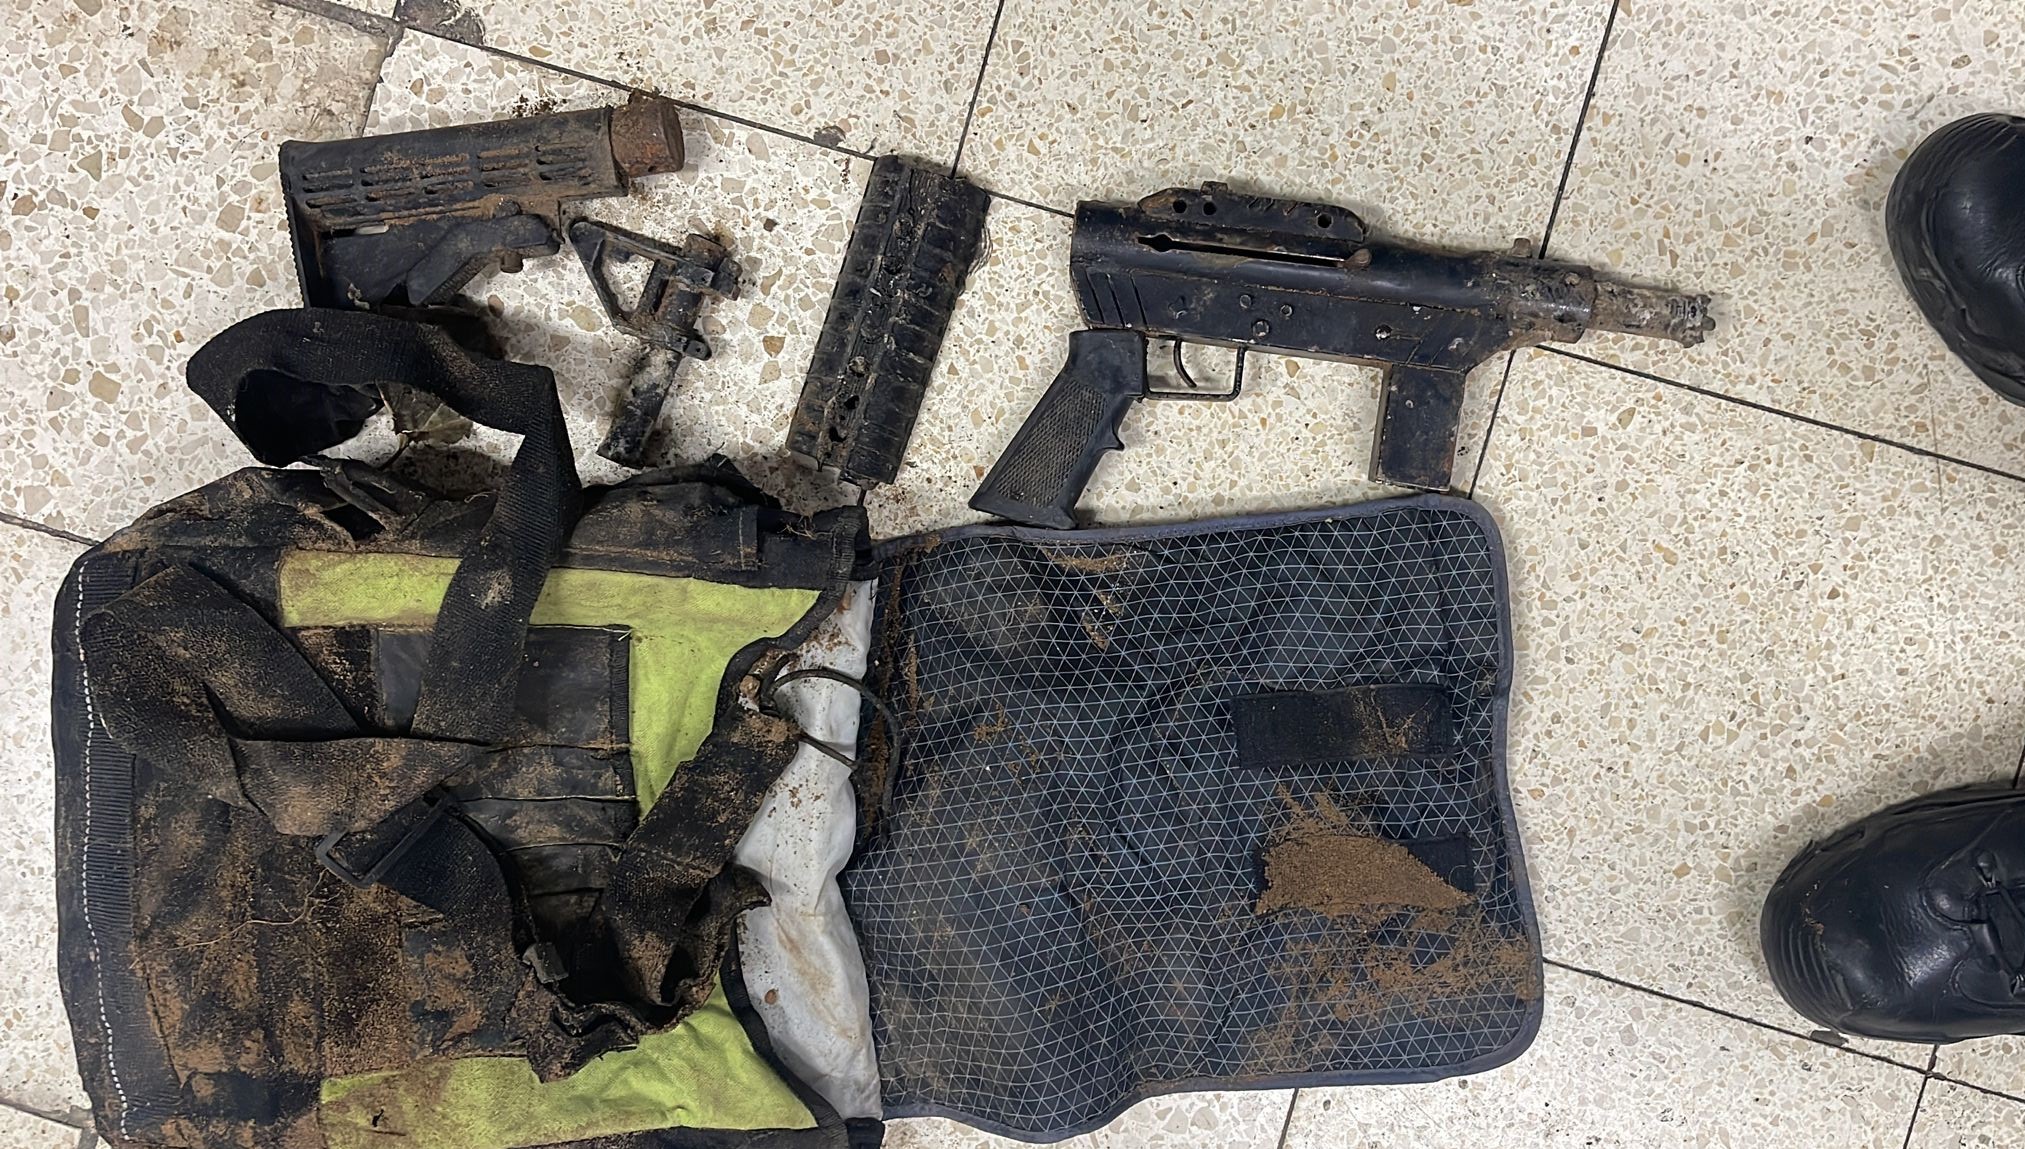 الشرطة: ضبط سلاح وكميات من السموم خلال مداهمة بيافا